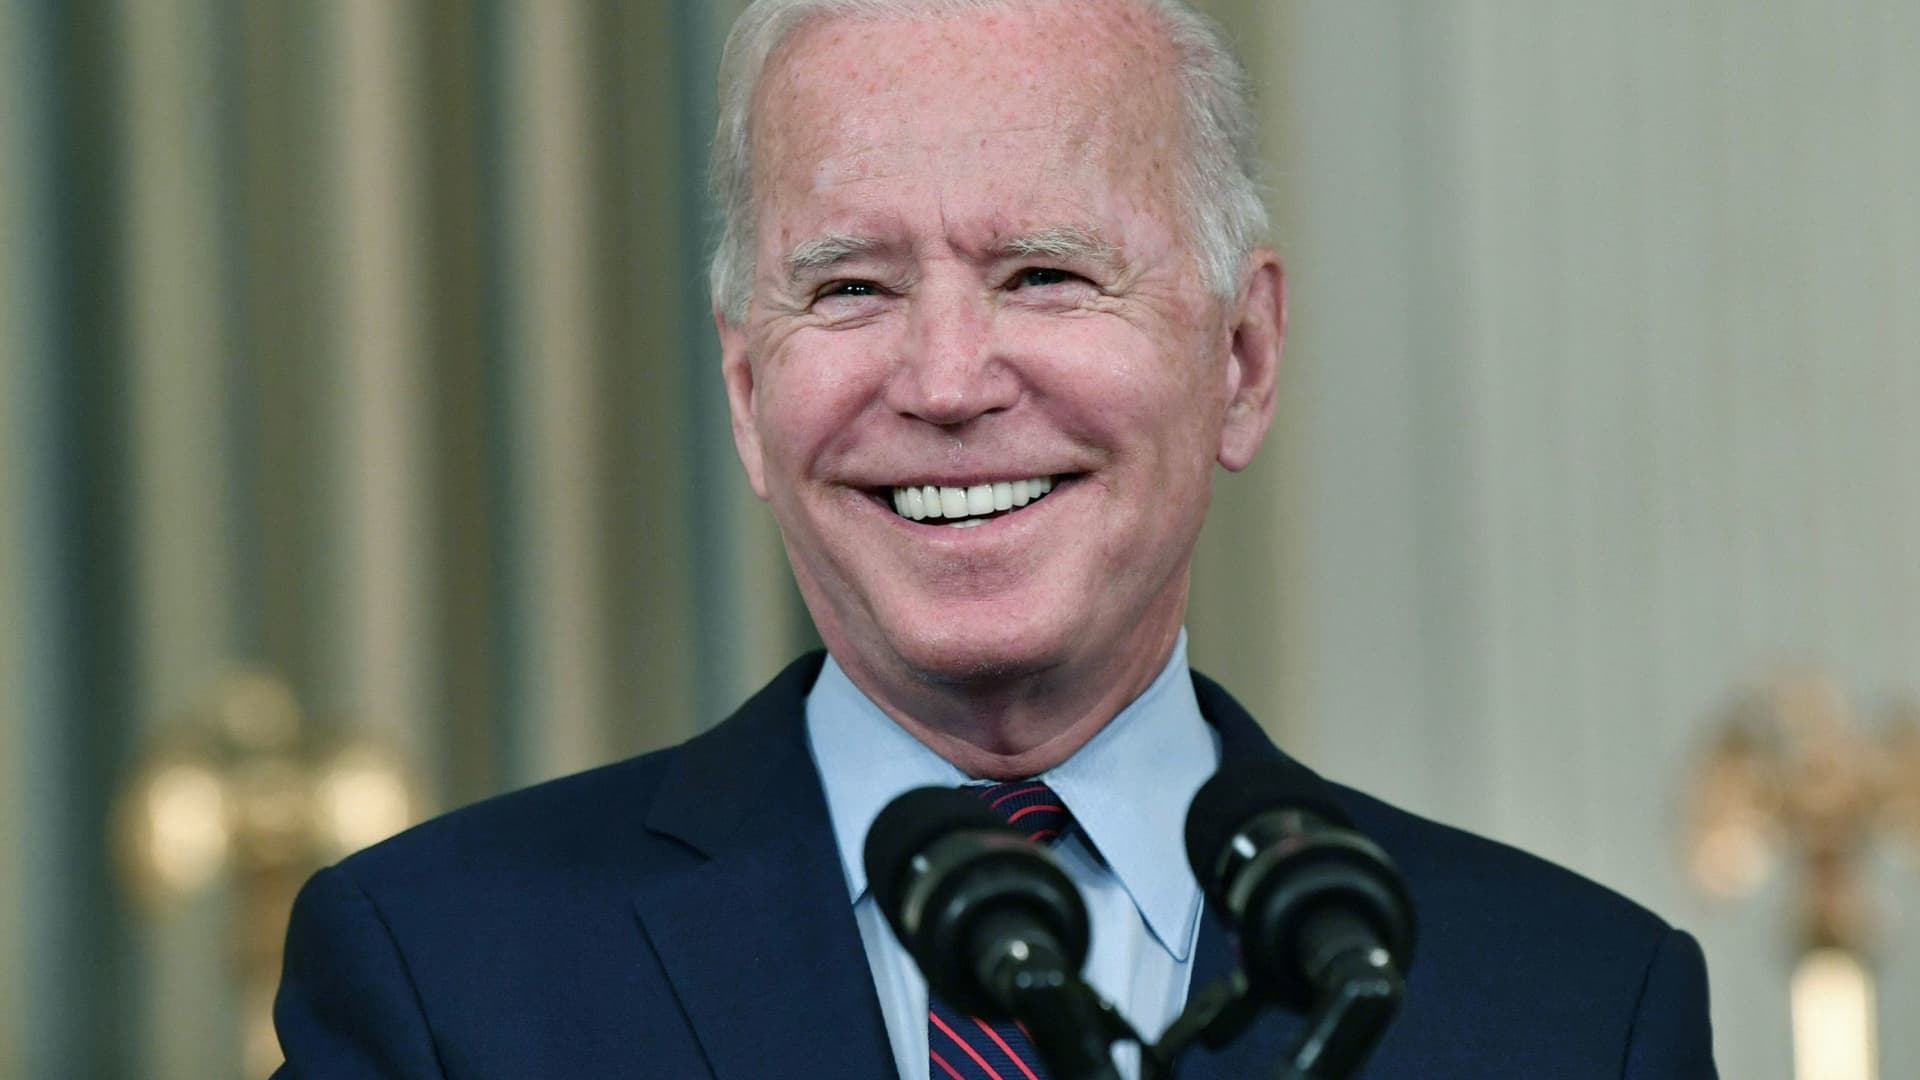 Biden, allied groups $140 million campaign war chest dwarfs Republican rivals